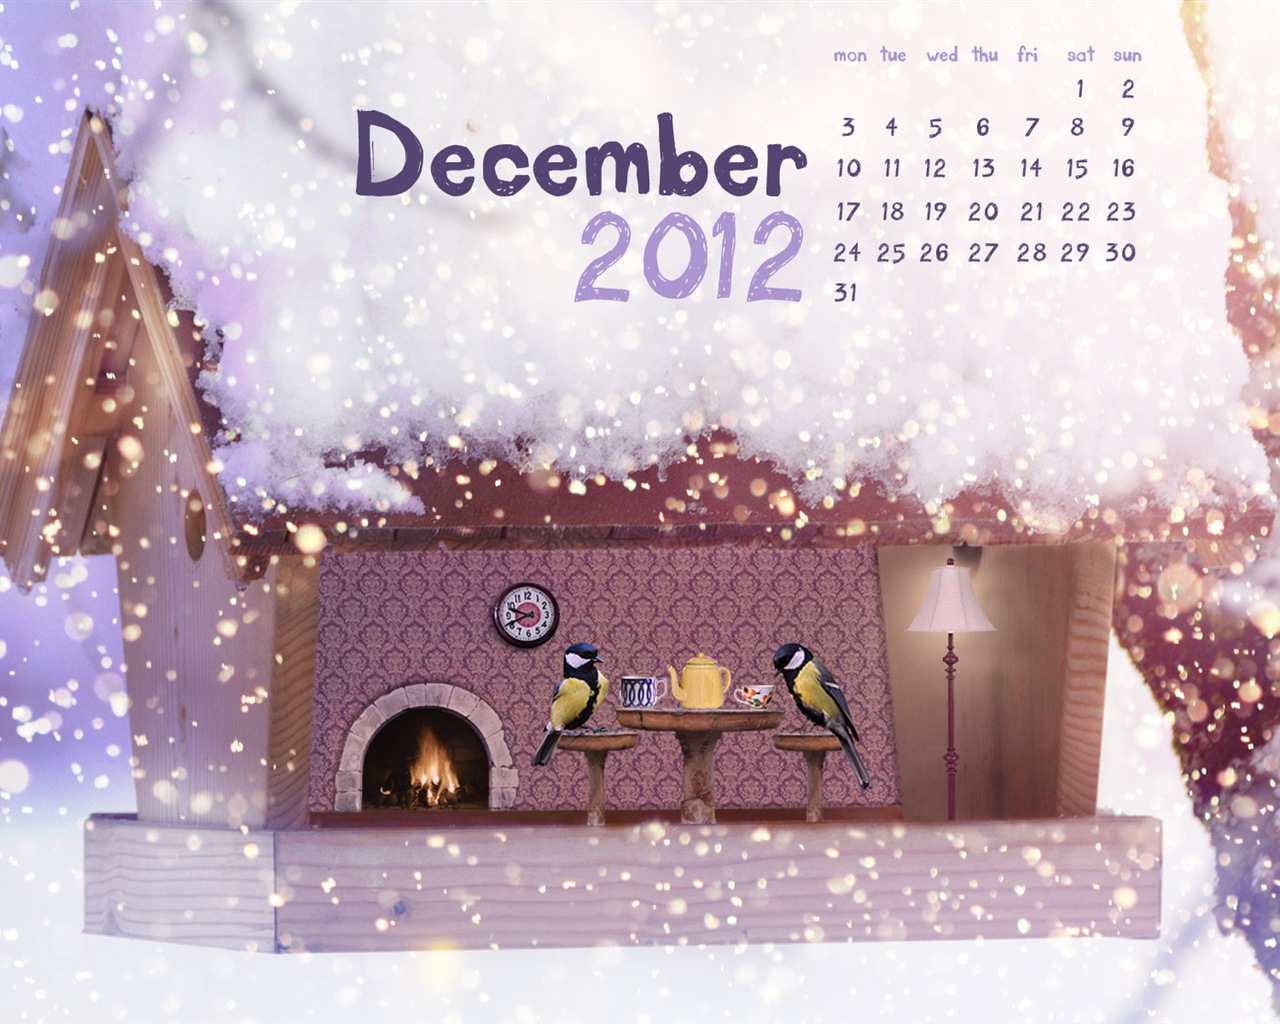 December 2012 Calendar wallpaper (1) #1 - 1280x1024